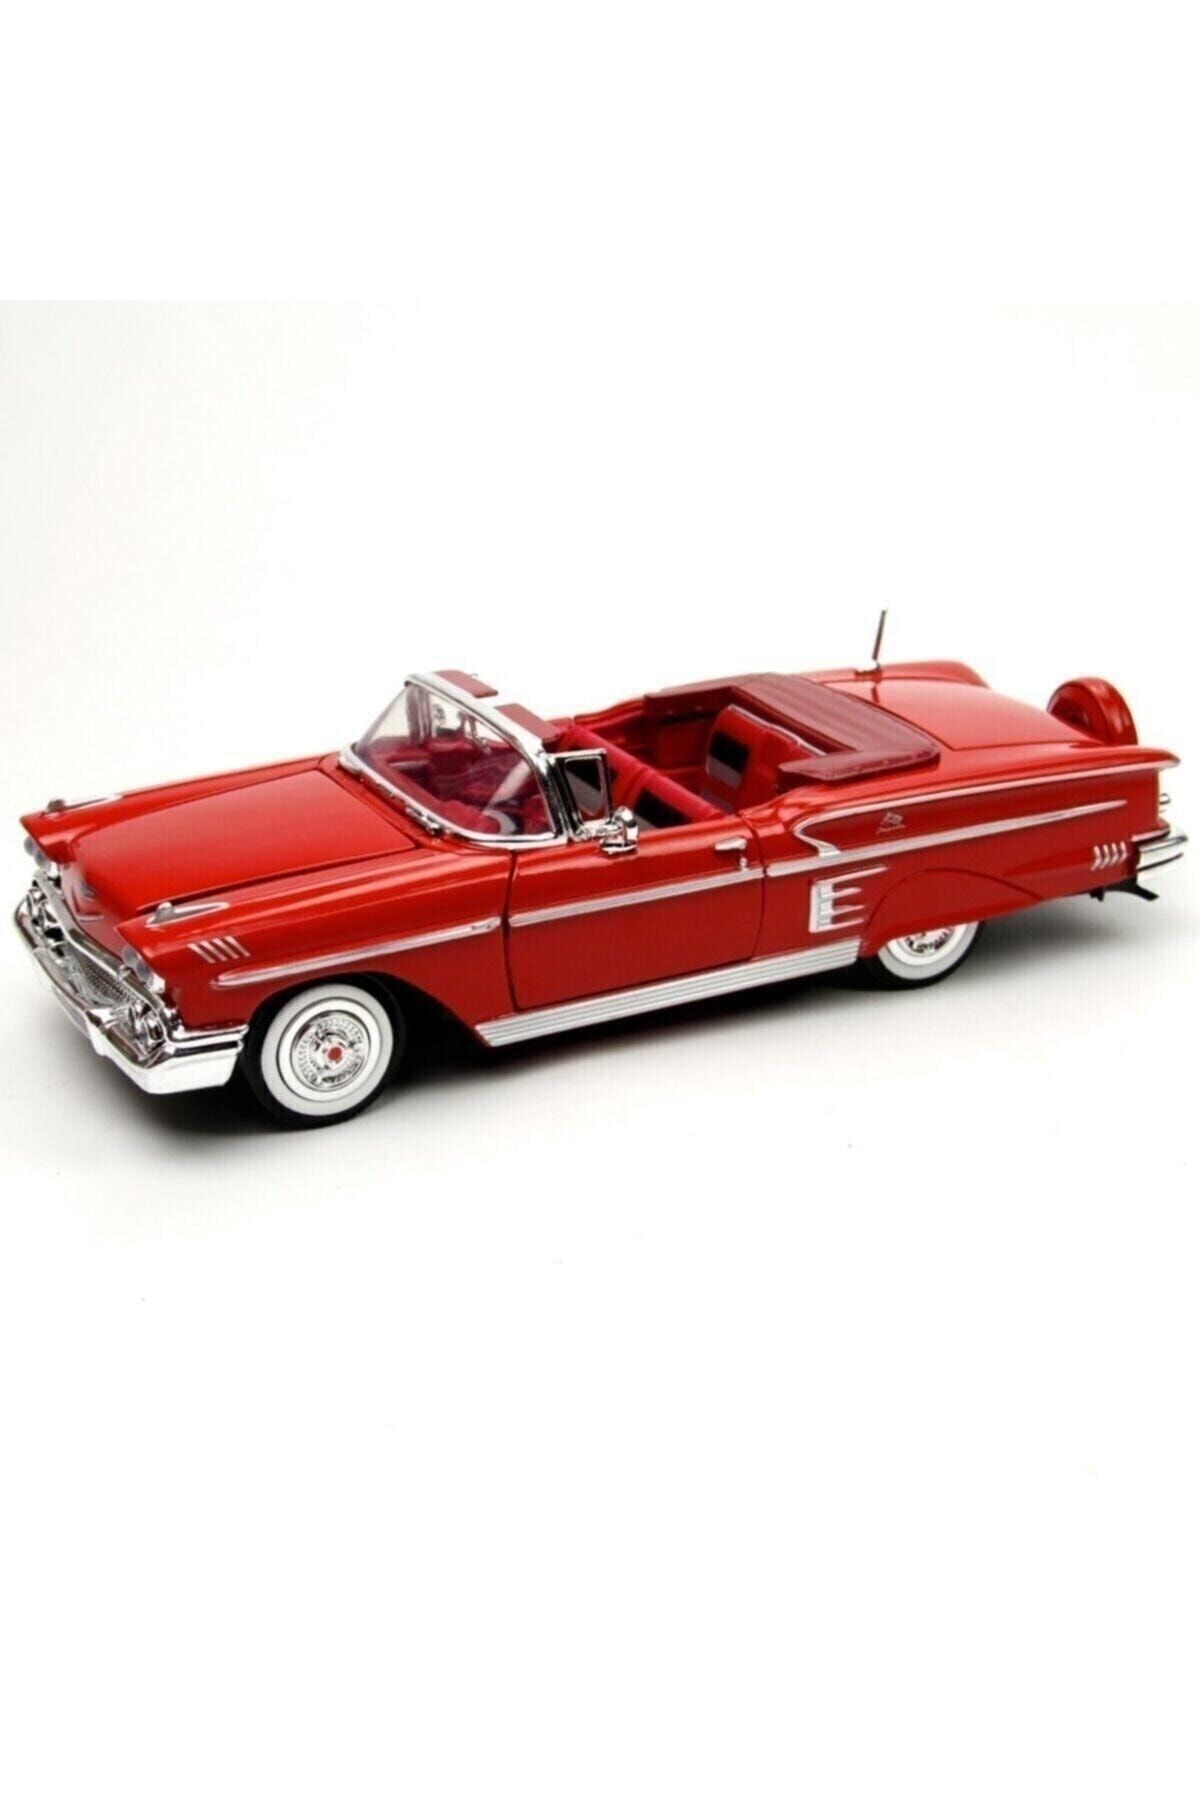 Motor Max Kırmızı 1:24 1958 Chevy Impala Araba